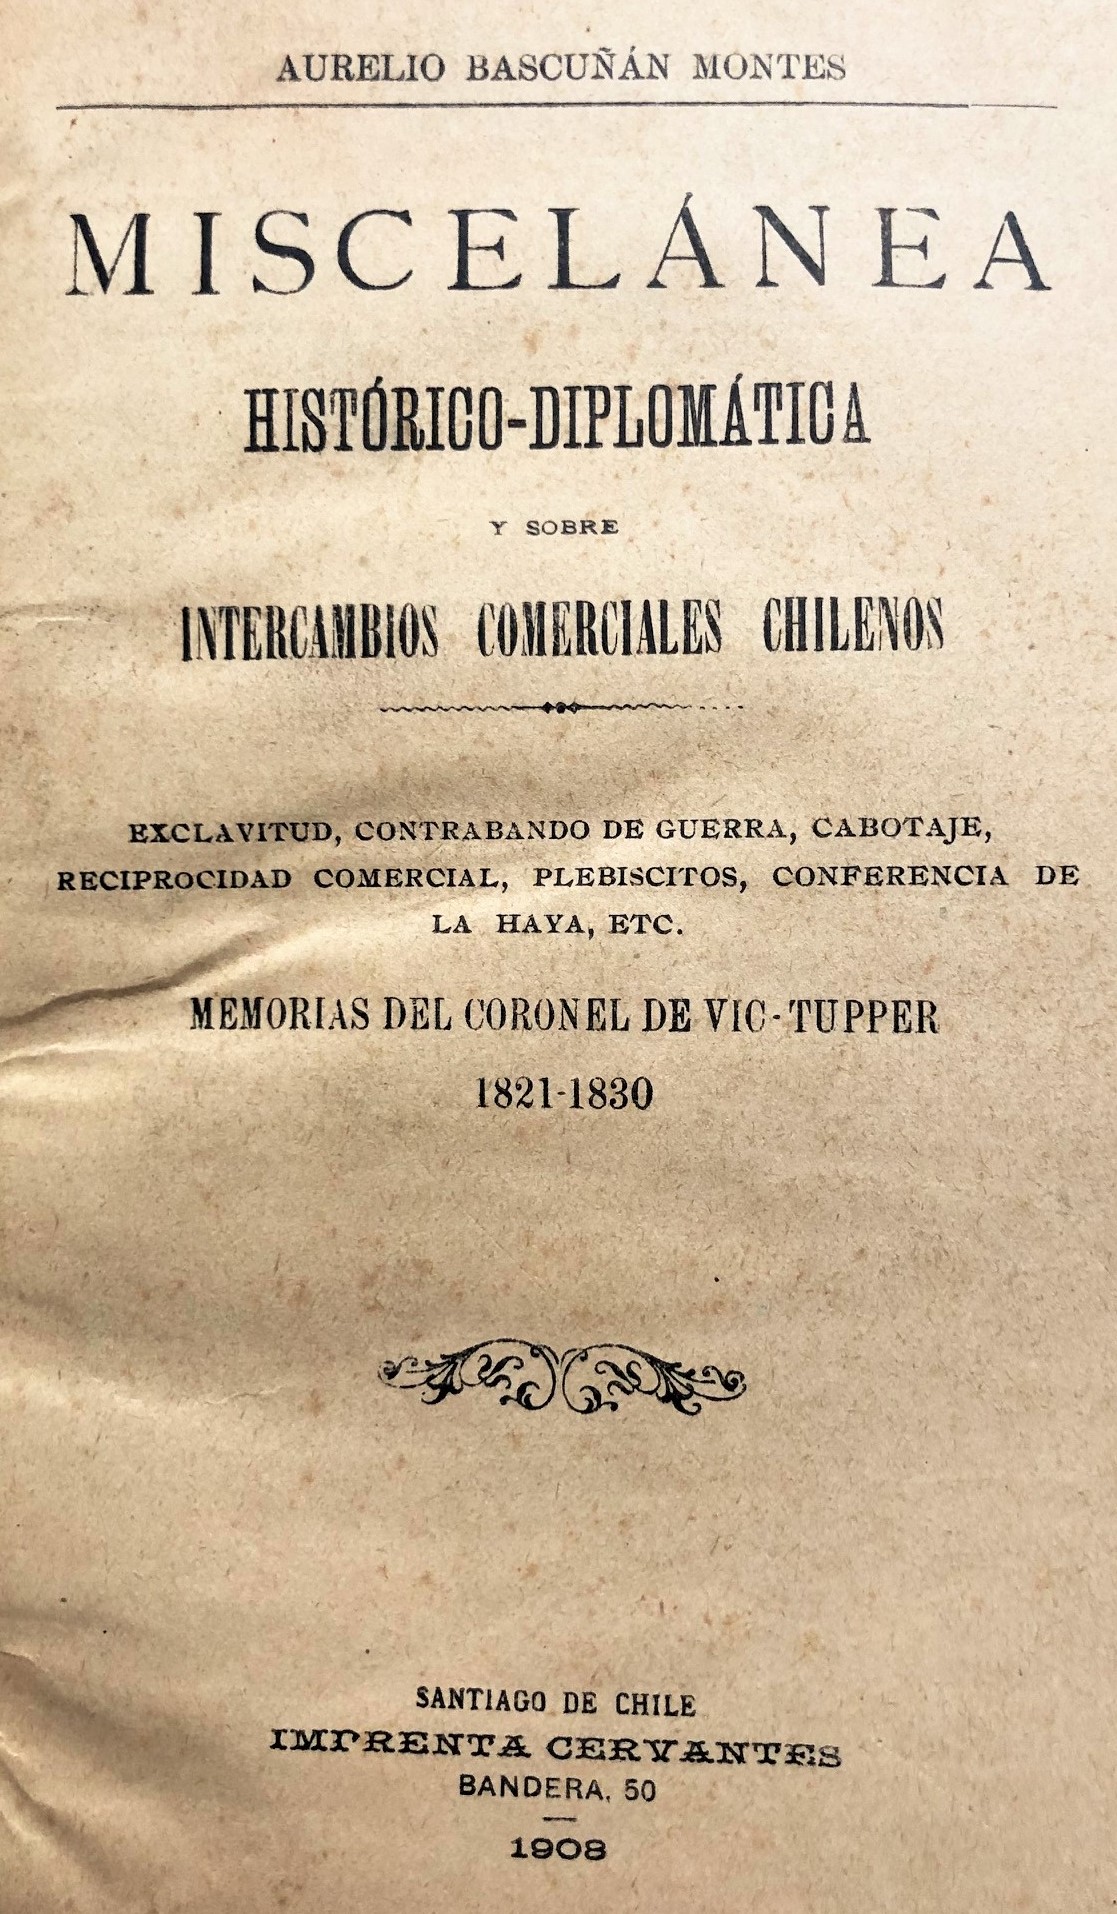 Aurelio Bascuñán Montes - Miscelánea Histórico-Diplomática y sobre intercambios comerciales chilenos